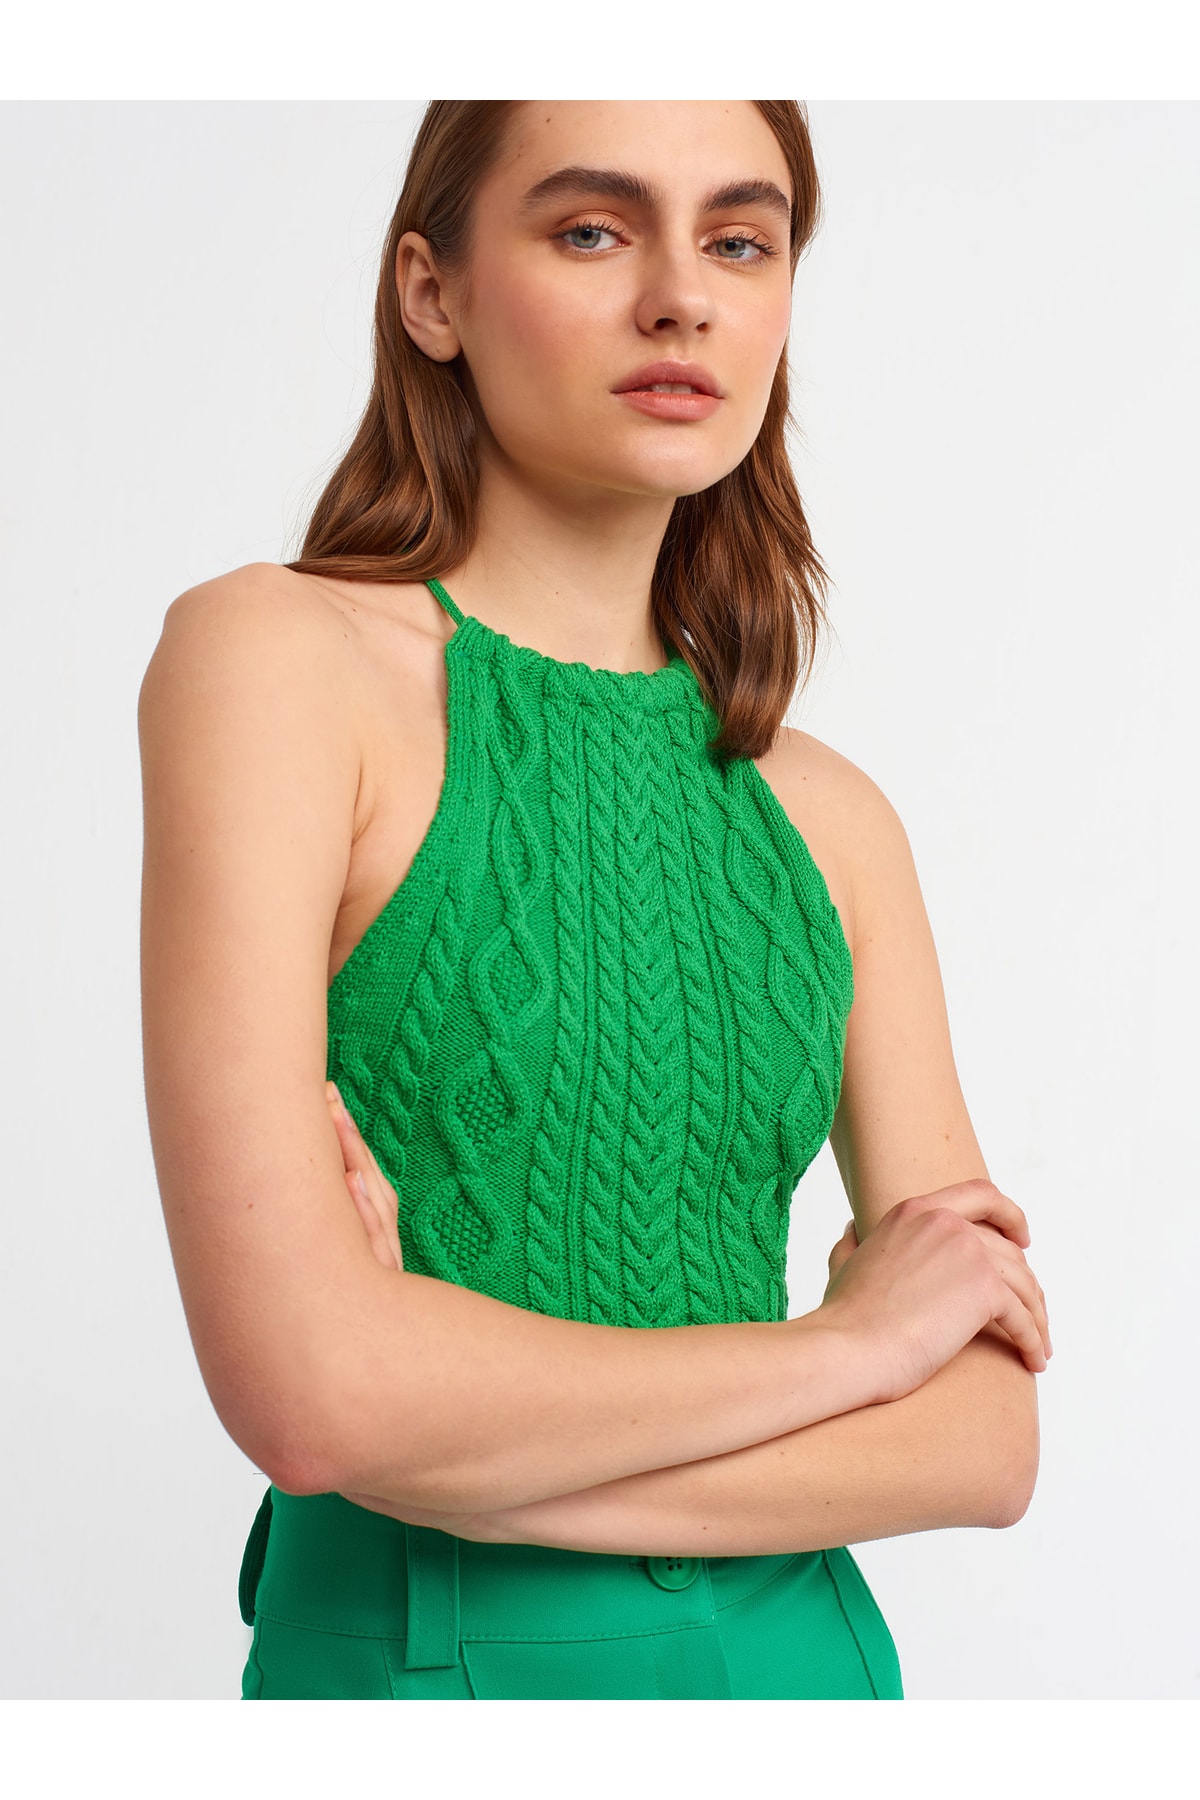 Dilvin 10152 Laced Back Neck Knitwear Singlet-green